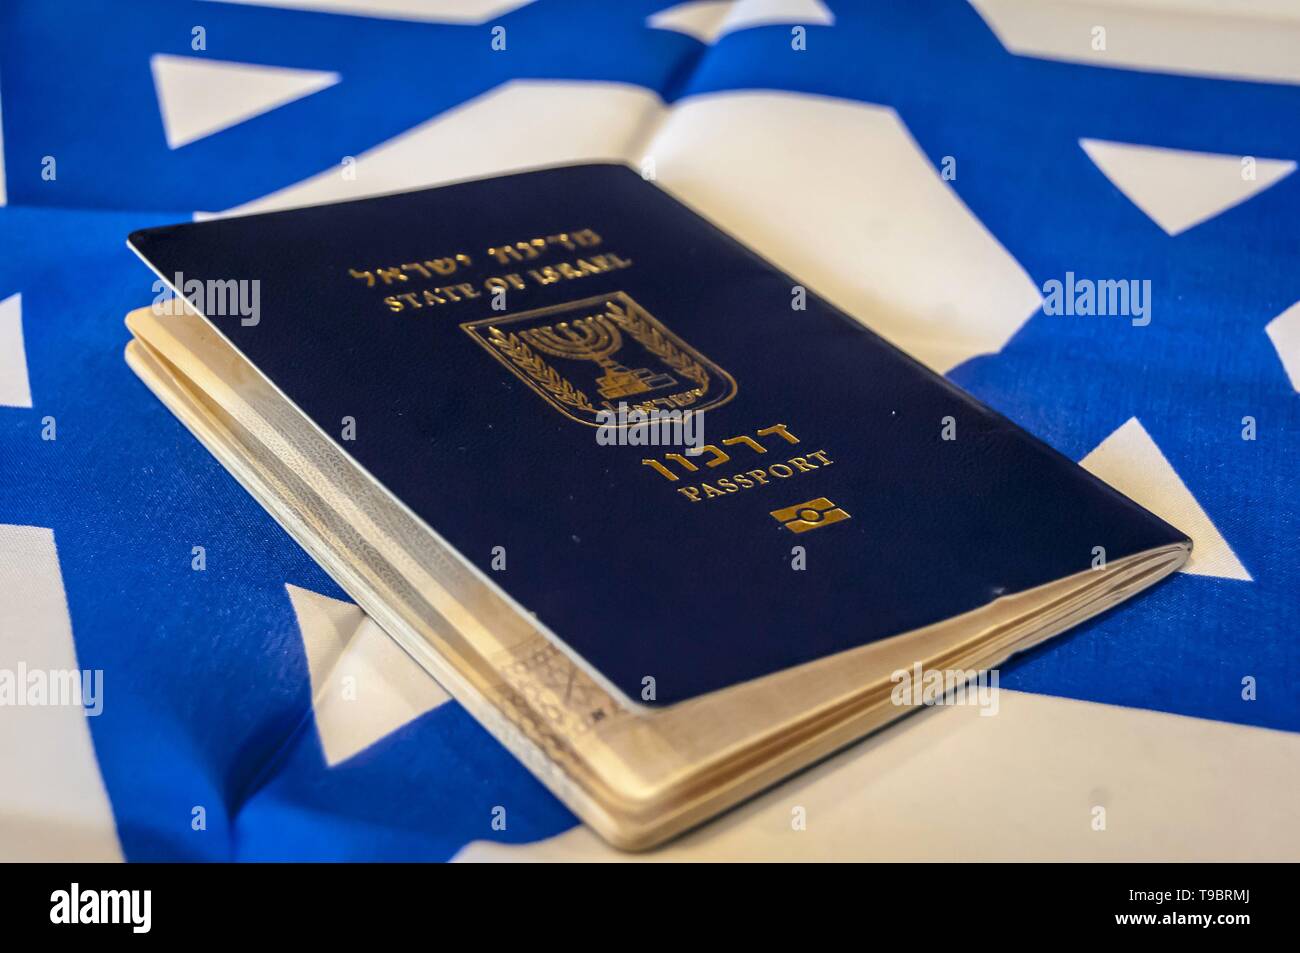 Un pasaporte azul del Estado de Israel en la bandera israelí en el fondo. El concepto de ciudadanía de Israel, Israel "biométrica" arkon ilustrativa de pasaporte Foto de stock